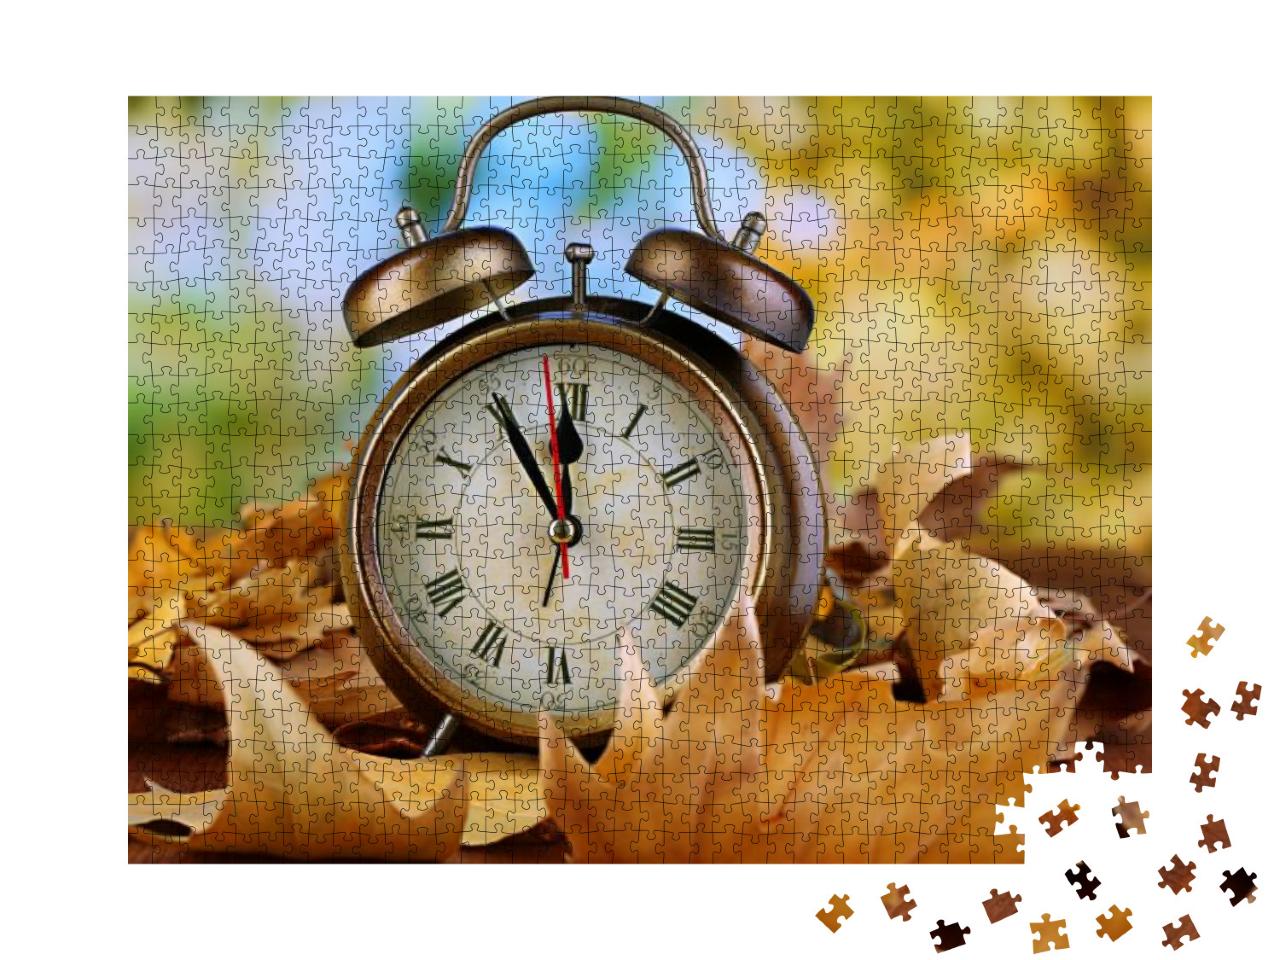 Puzzle 1000 Teile „Alte Uhr auf Blättern im Herbst, Wecker auf Holztisch“